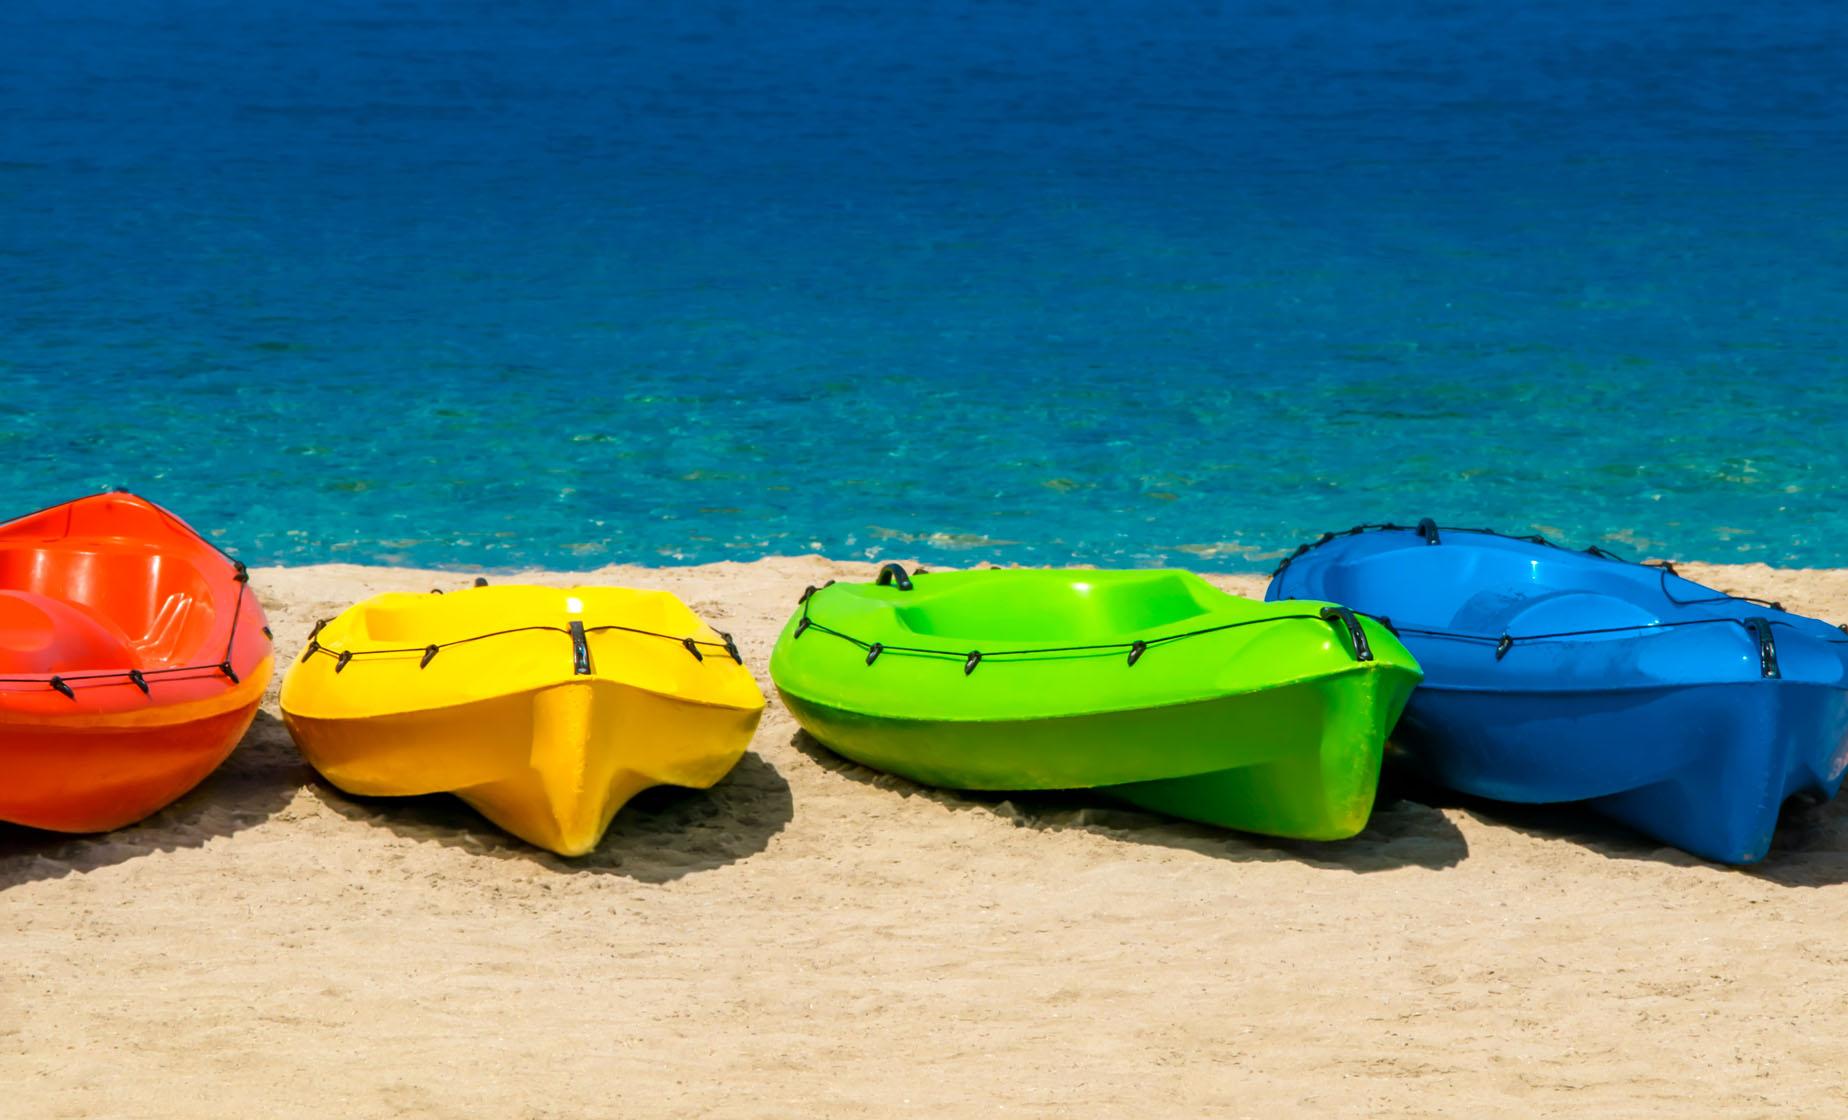 Pelican Resort Kayak & Snorkel Port Tour in St. Maarten